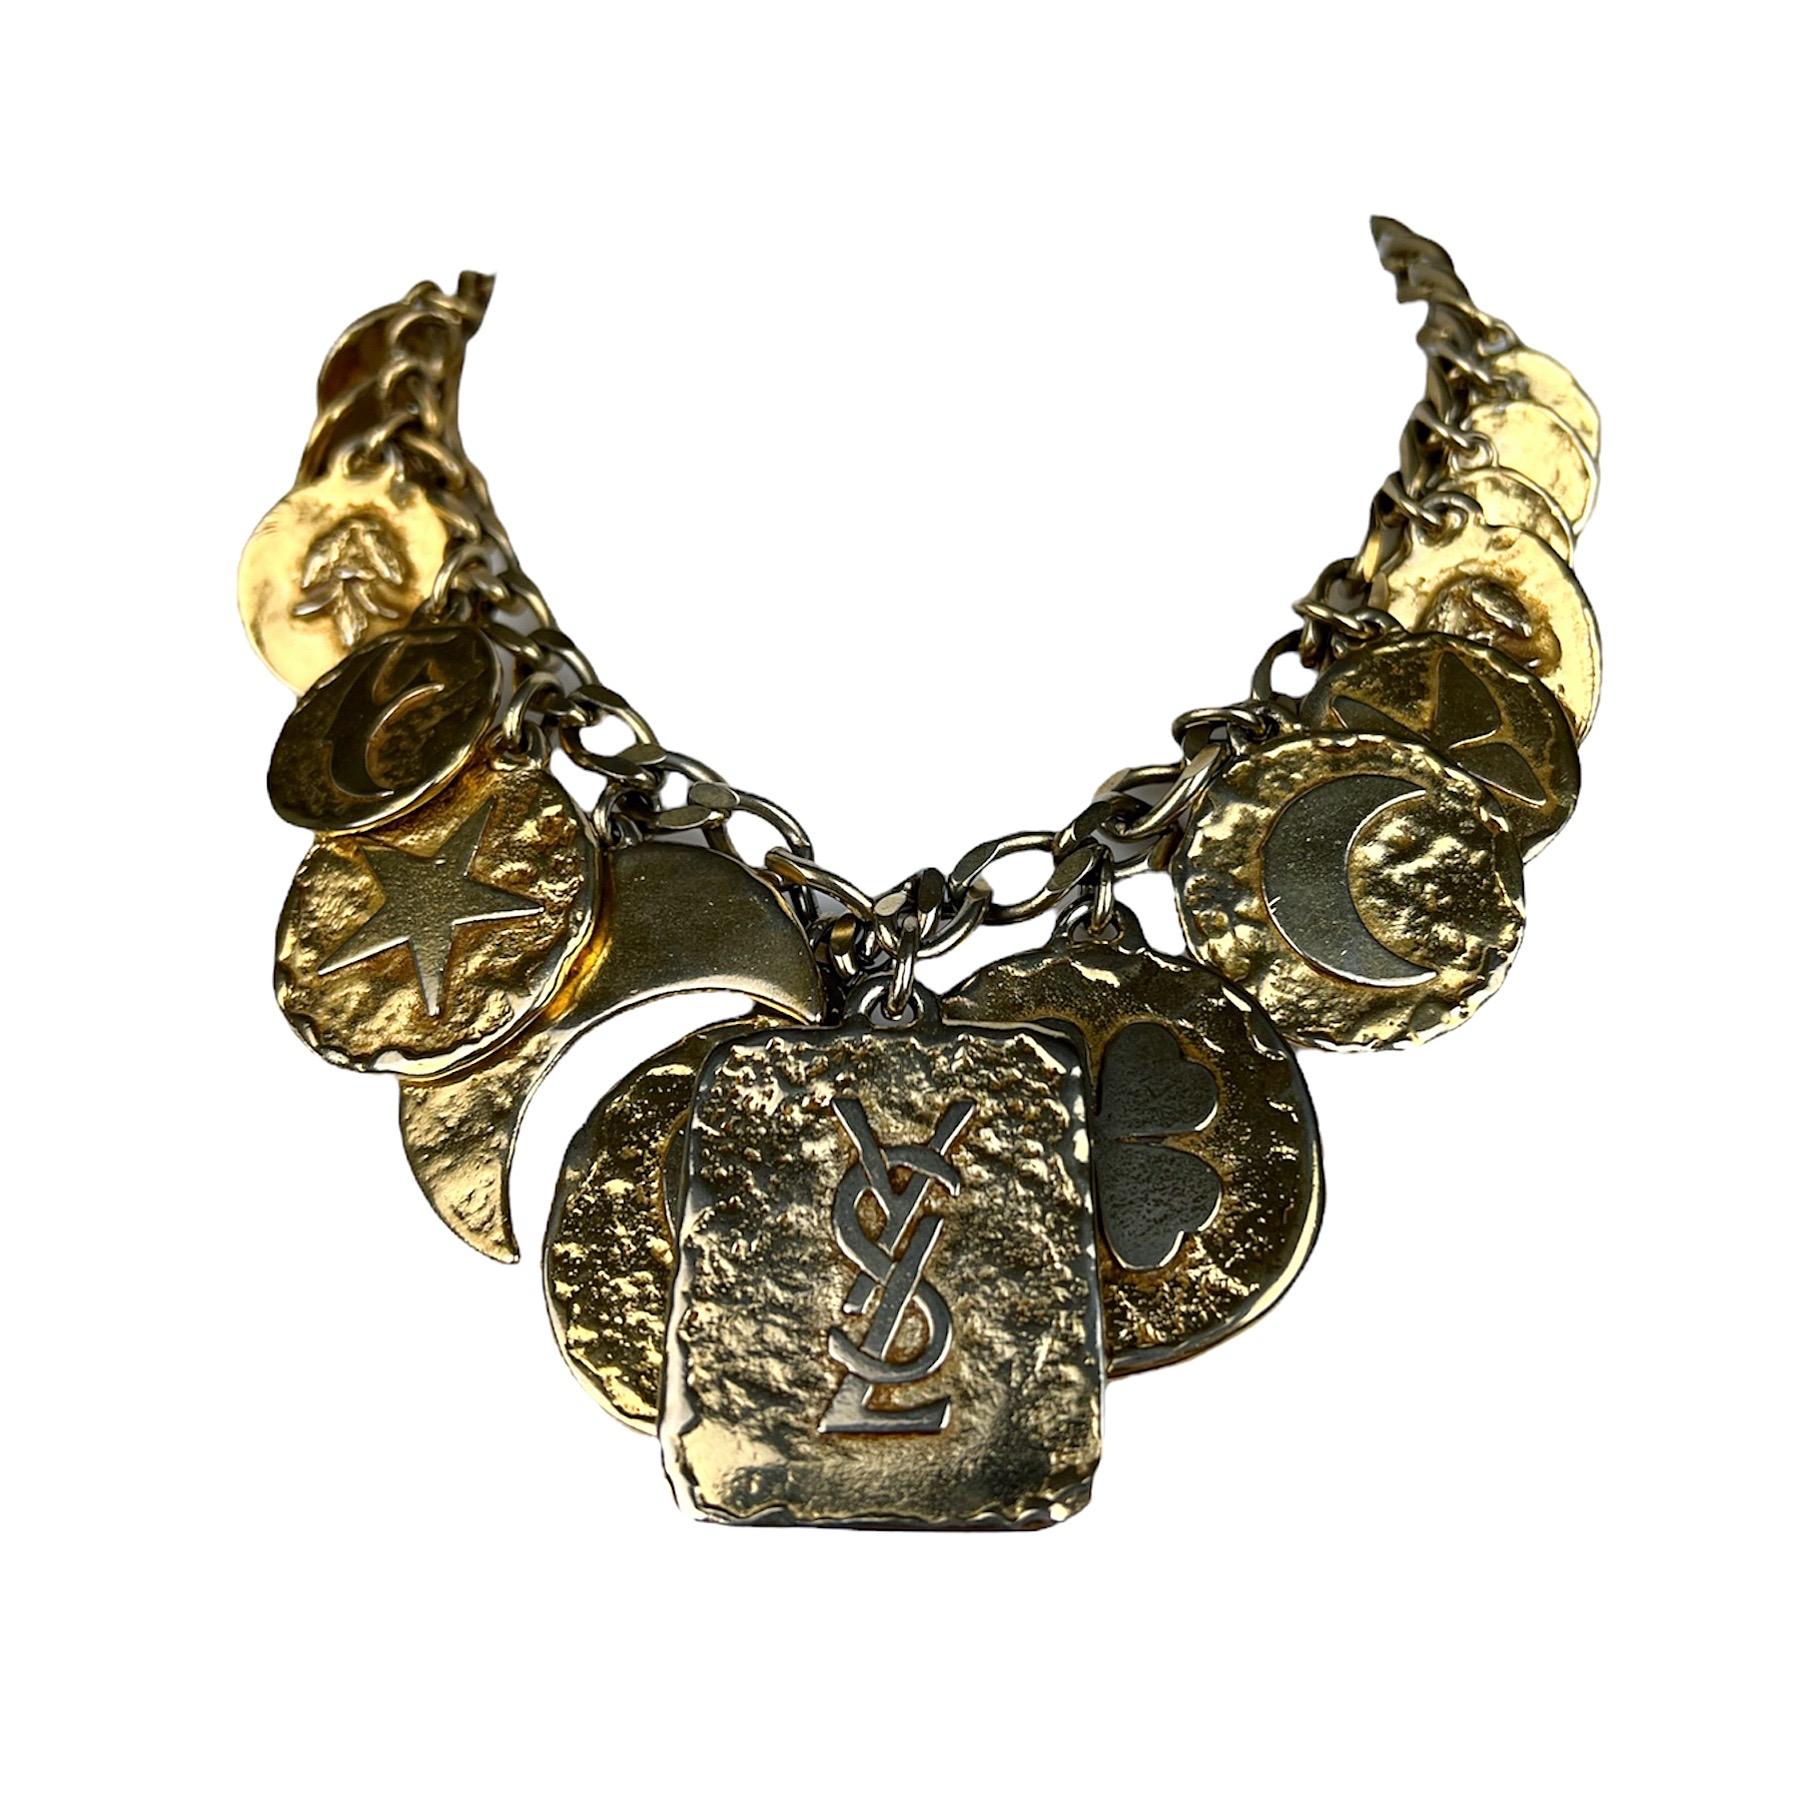 Magnifique collier à breloques en or Yves Saint Laurent datant des années 1980. Chaque breloque représente un symbole (avec une signification) qui était cher au cœur d'Yves Saint Laurent et qu'il a utilisé tout au long de sa carrière à de nombreuses